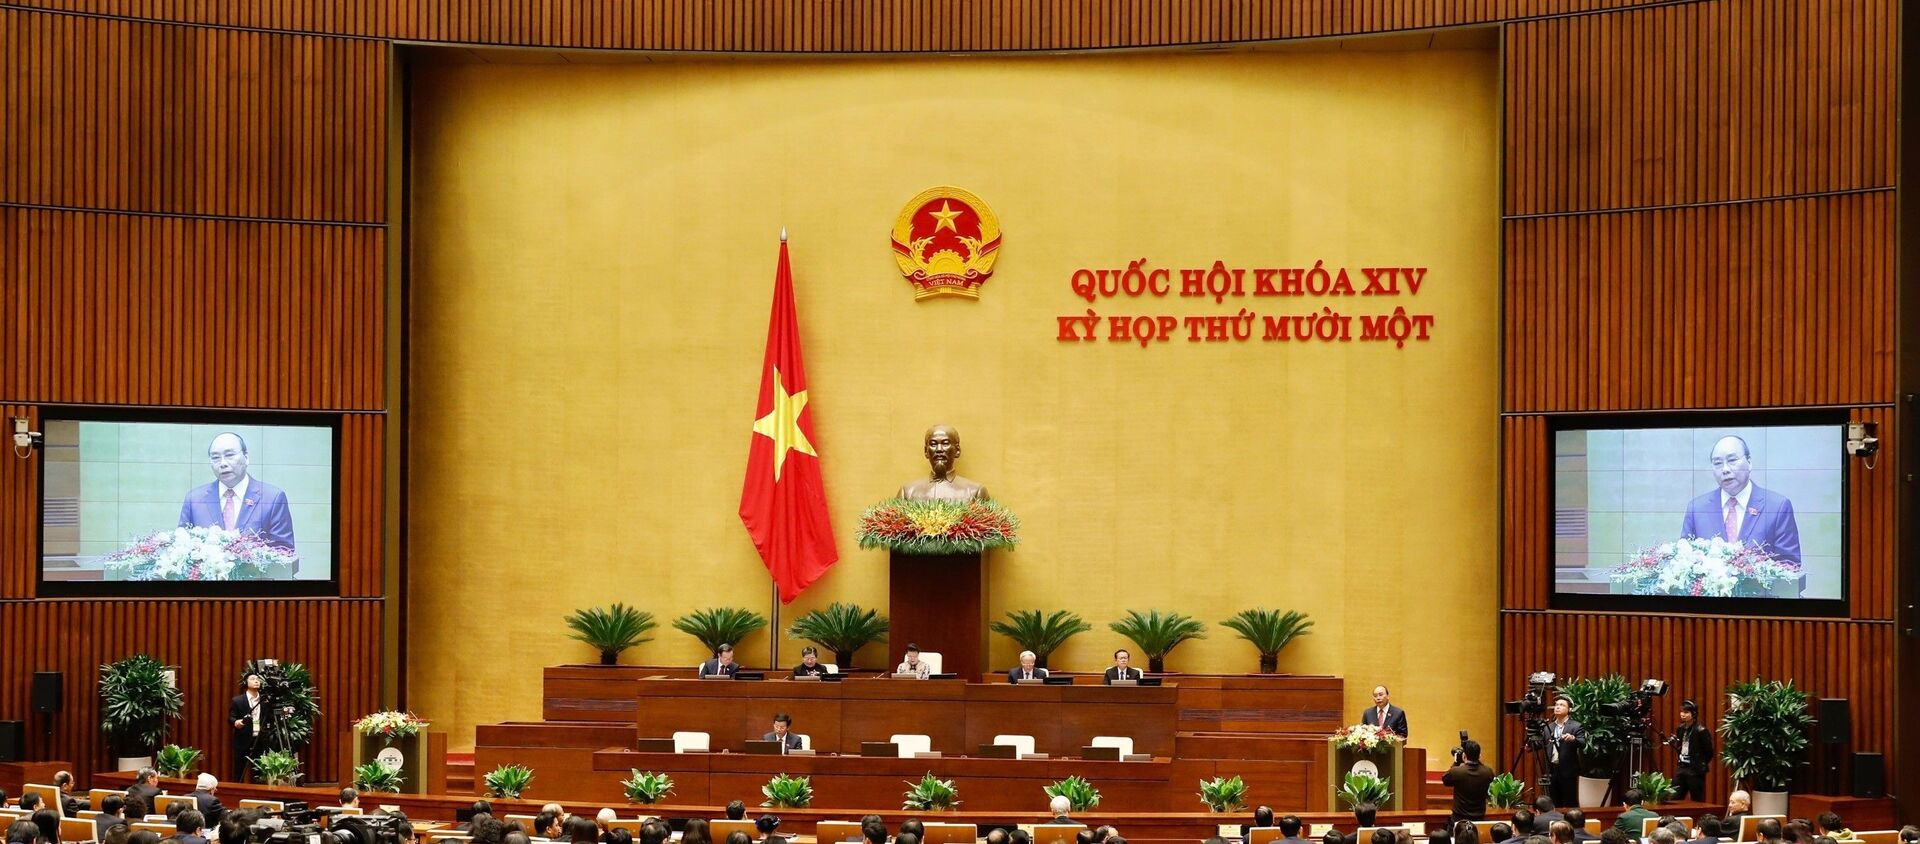 Thủ tướng Nguyễn Xuân Phúc trình bày báo cáo tổng kết của Chính phủ nhiệm kỳ 2016-2021. - Sputnik Việt Nam, 1920, 25.03.2021